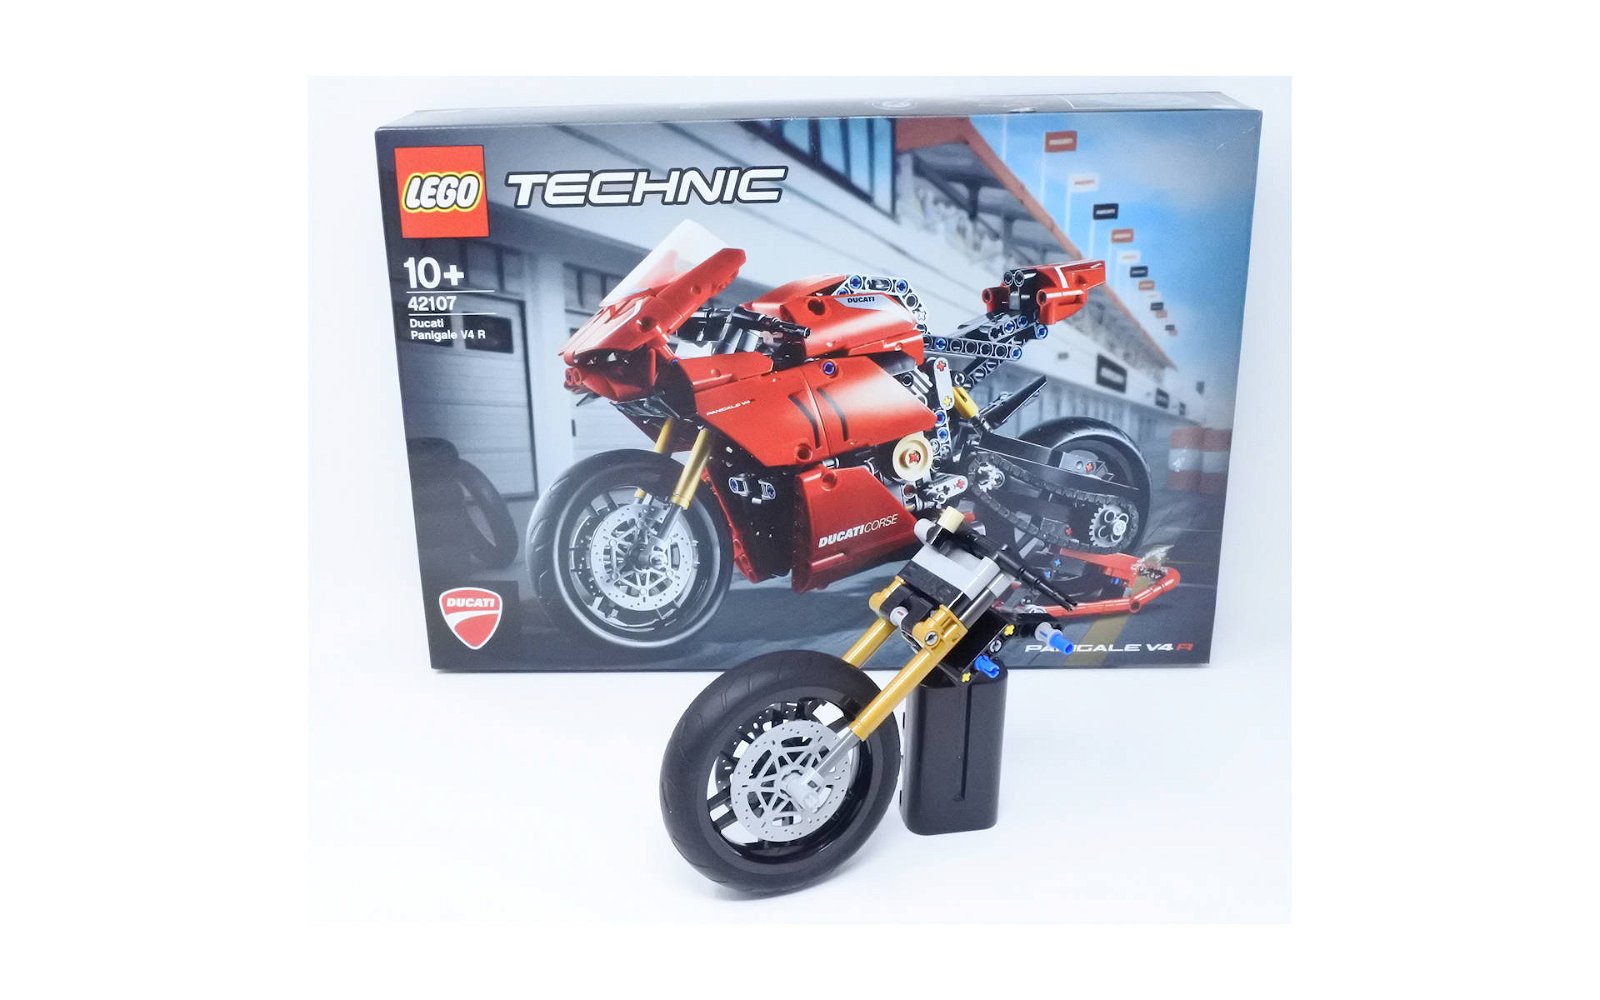 LEGO Technic # 42107 Ducati Panigale V4 R: la recensione - Tom's